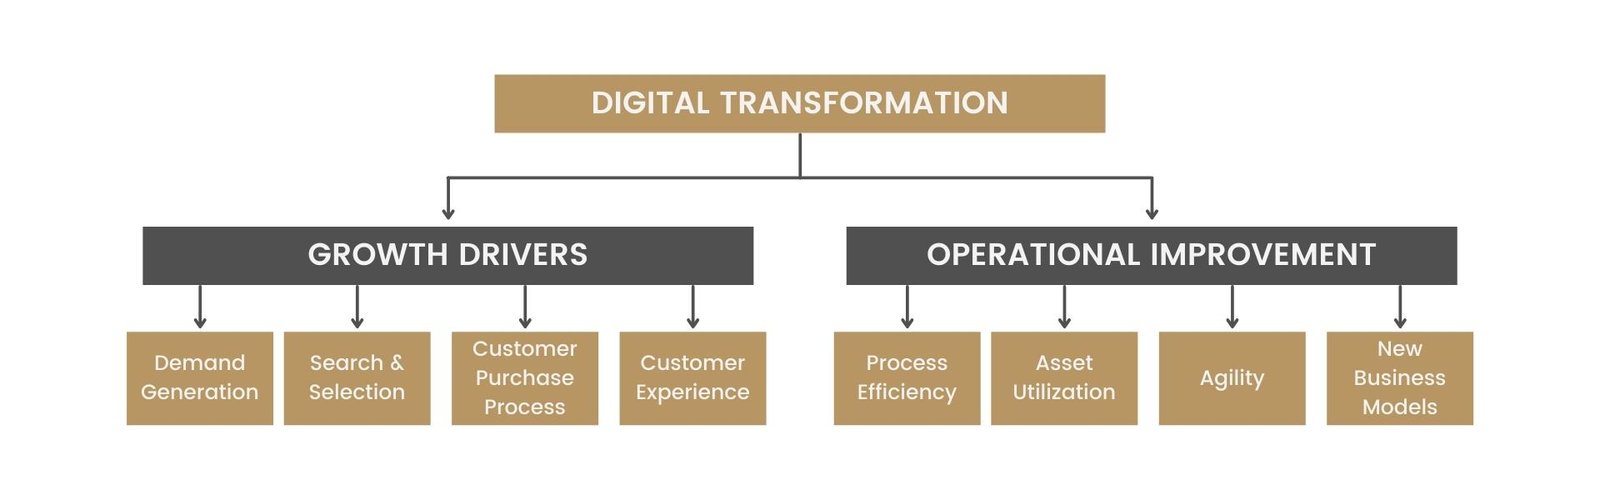 Digital Transformation and Innovation